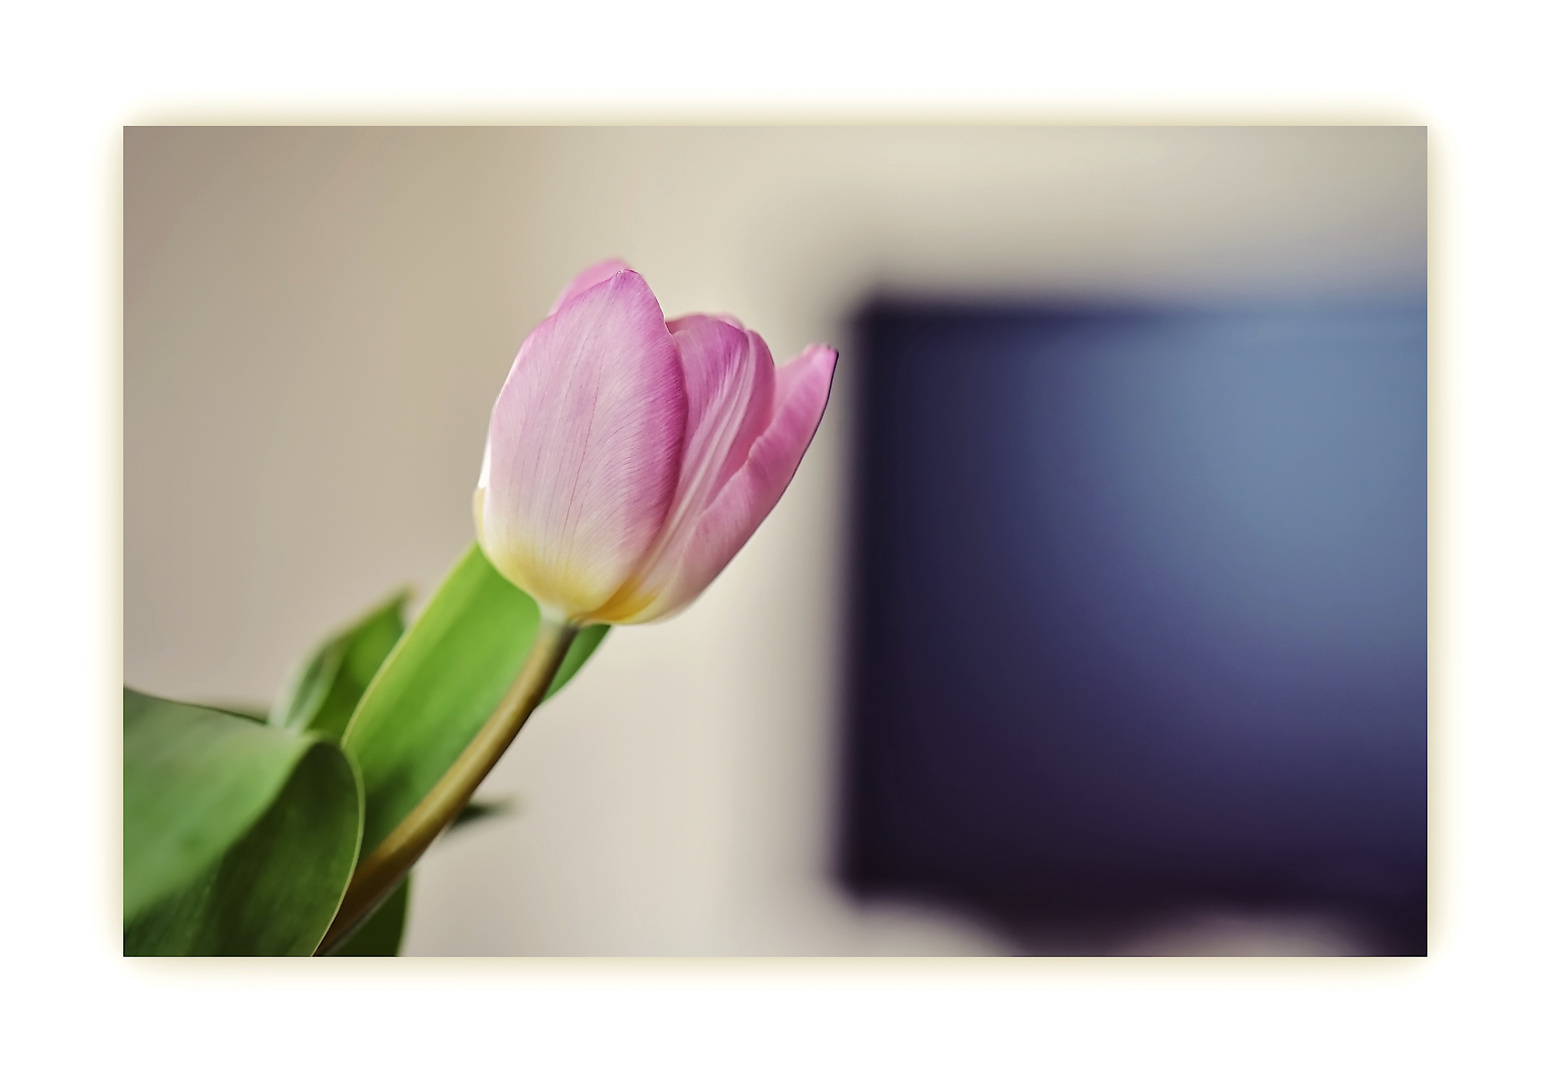 Tulpe im Wohnzimmer